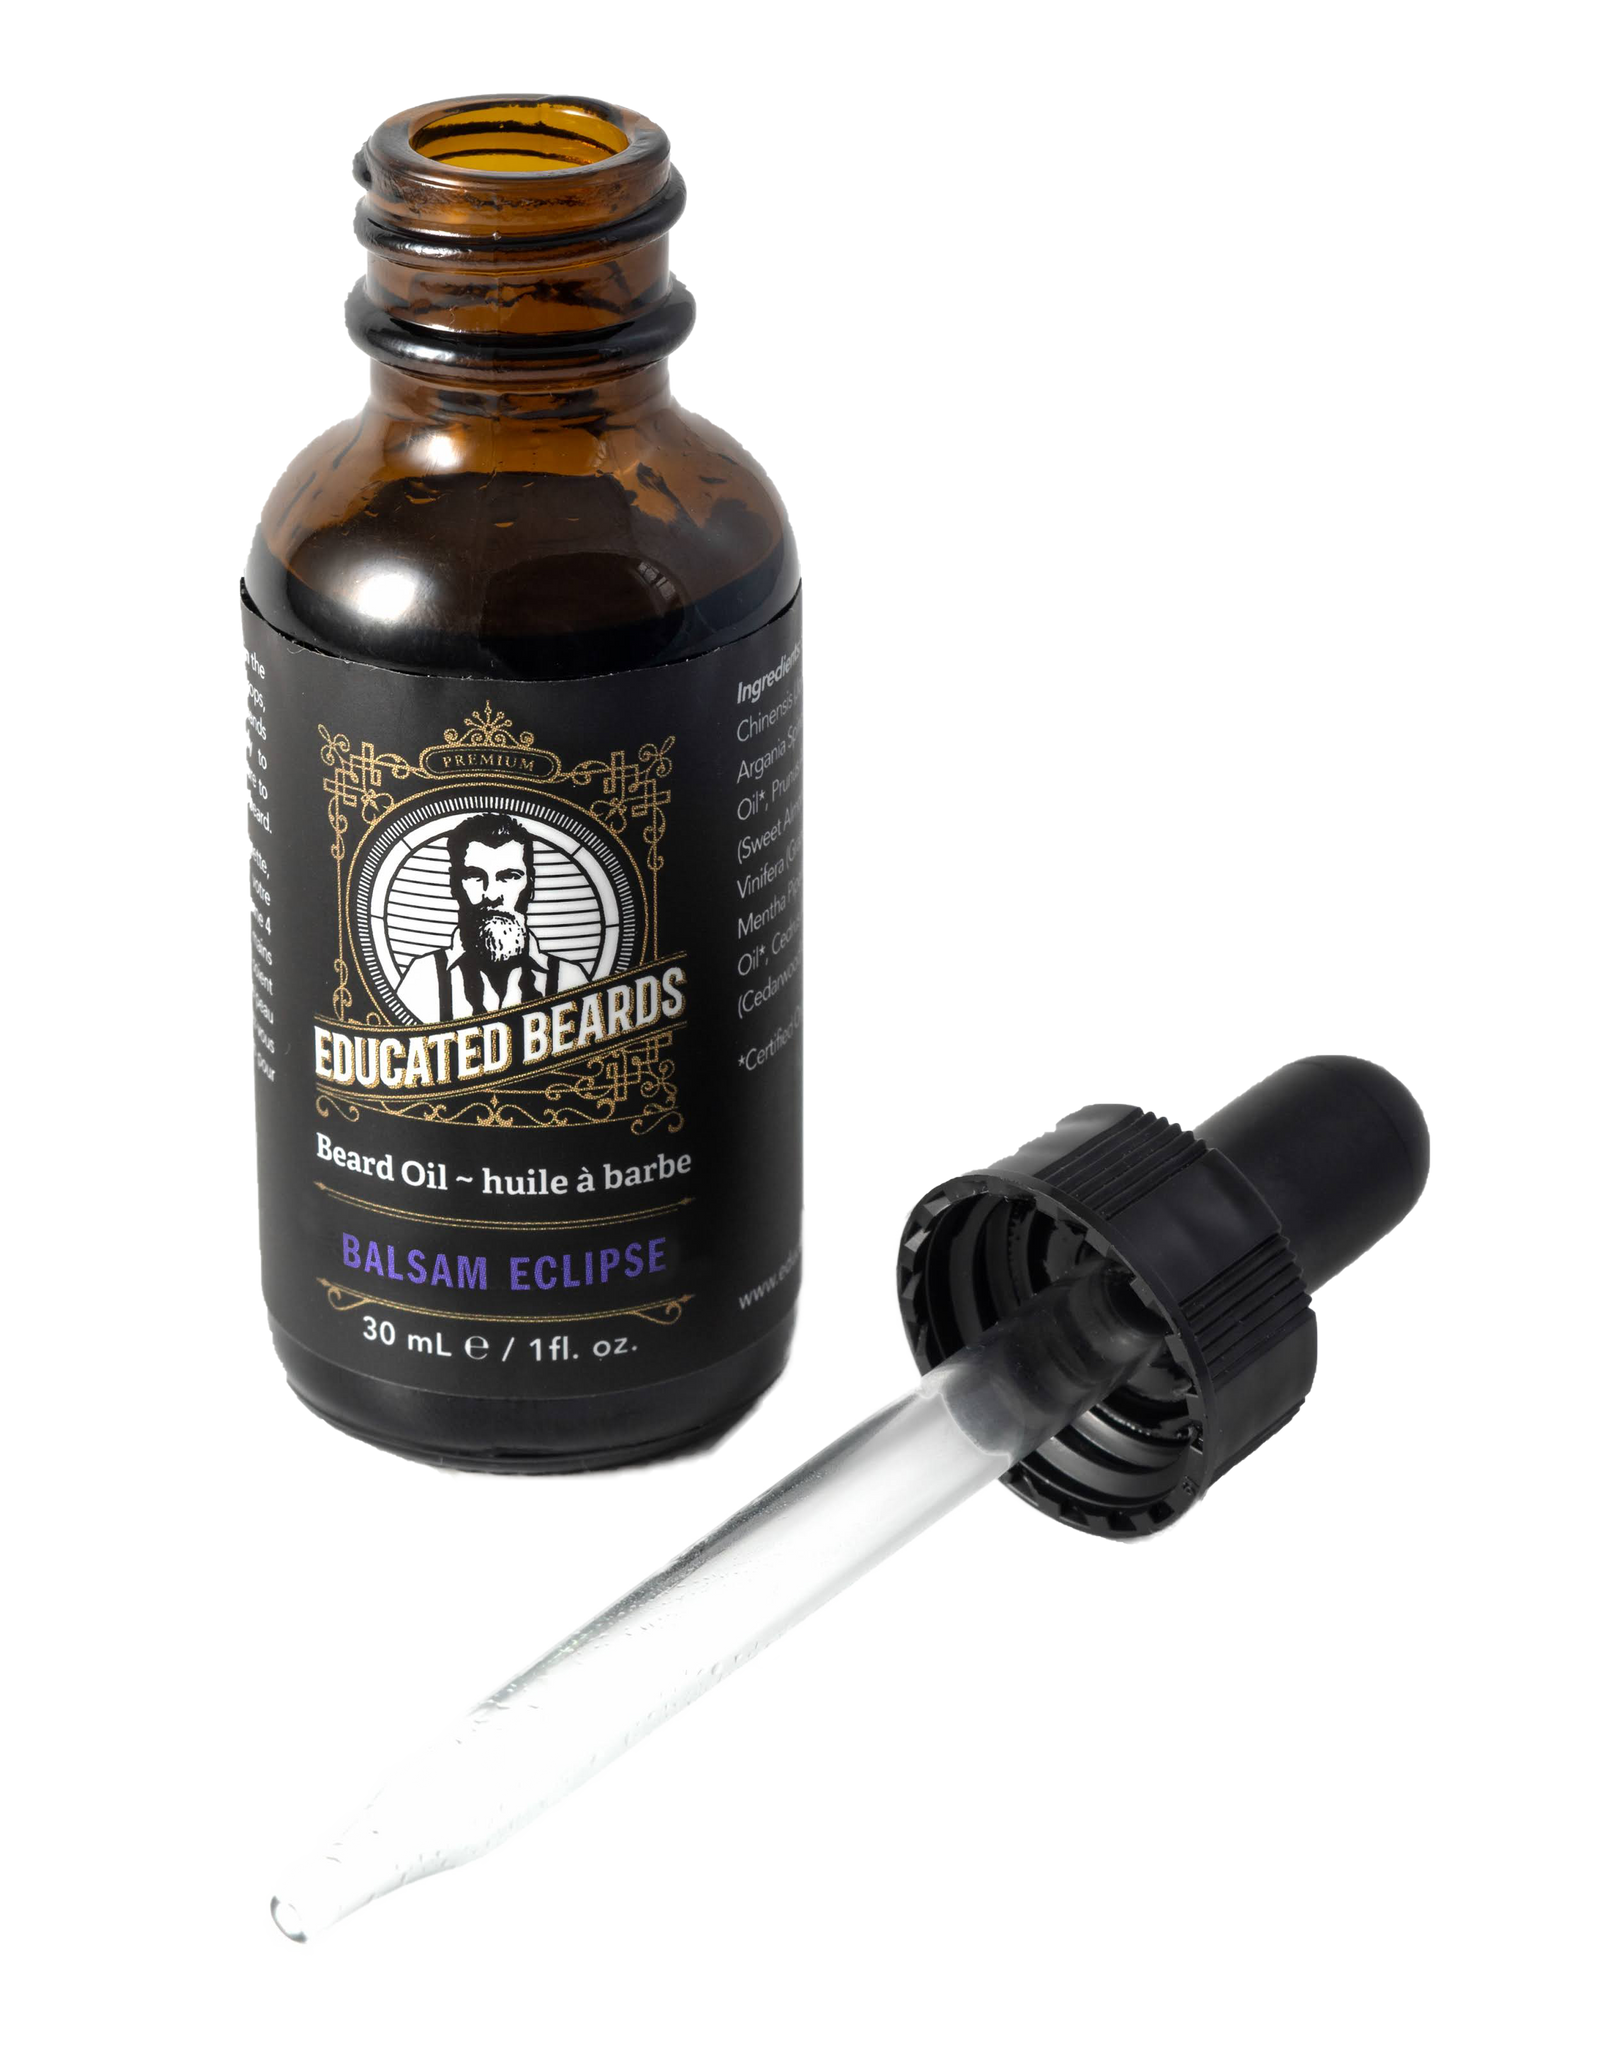 Balsam eclipe men's beard oil 30ml bottle with a dropper